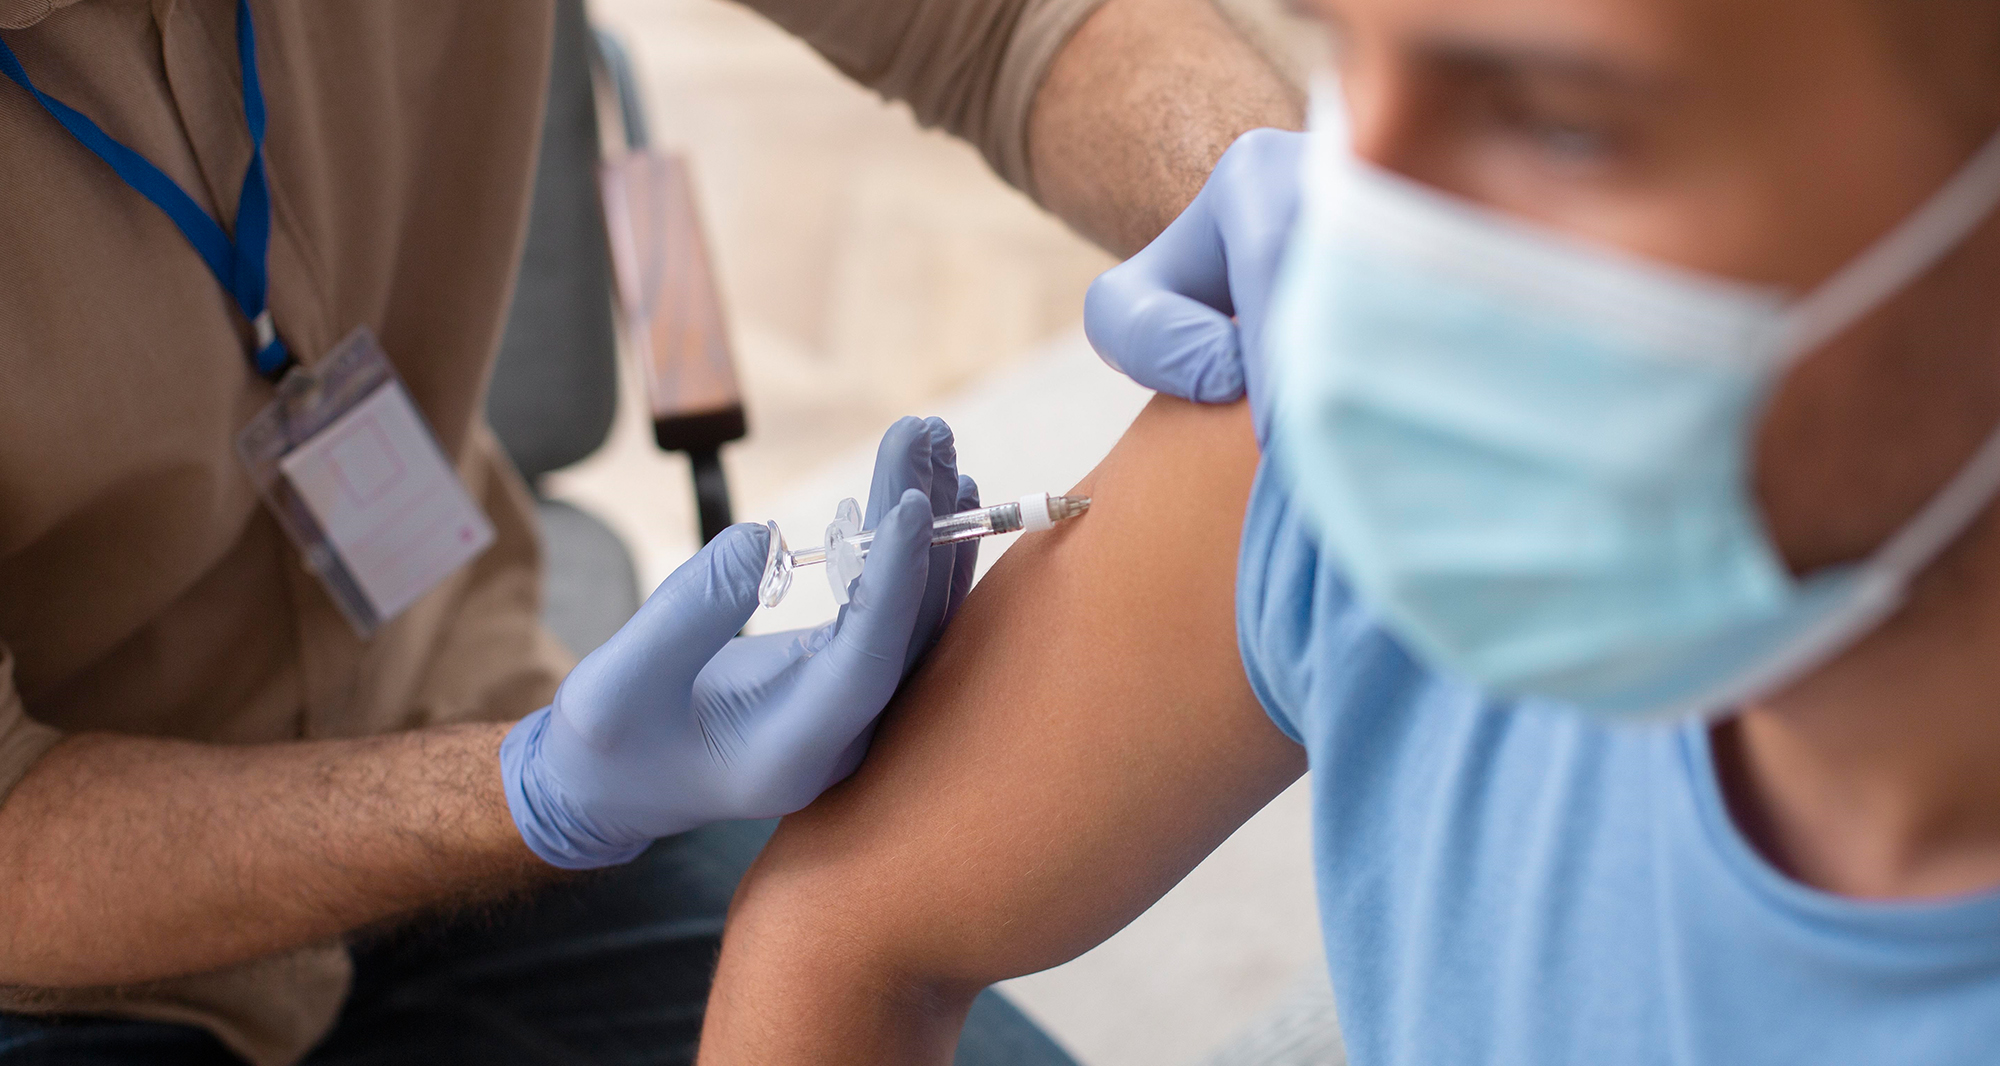 Impfung im Arm